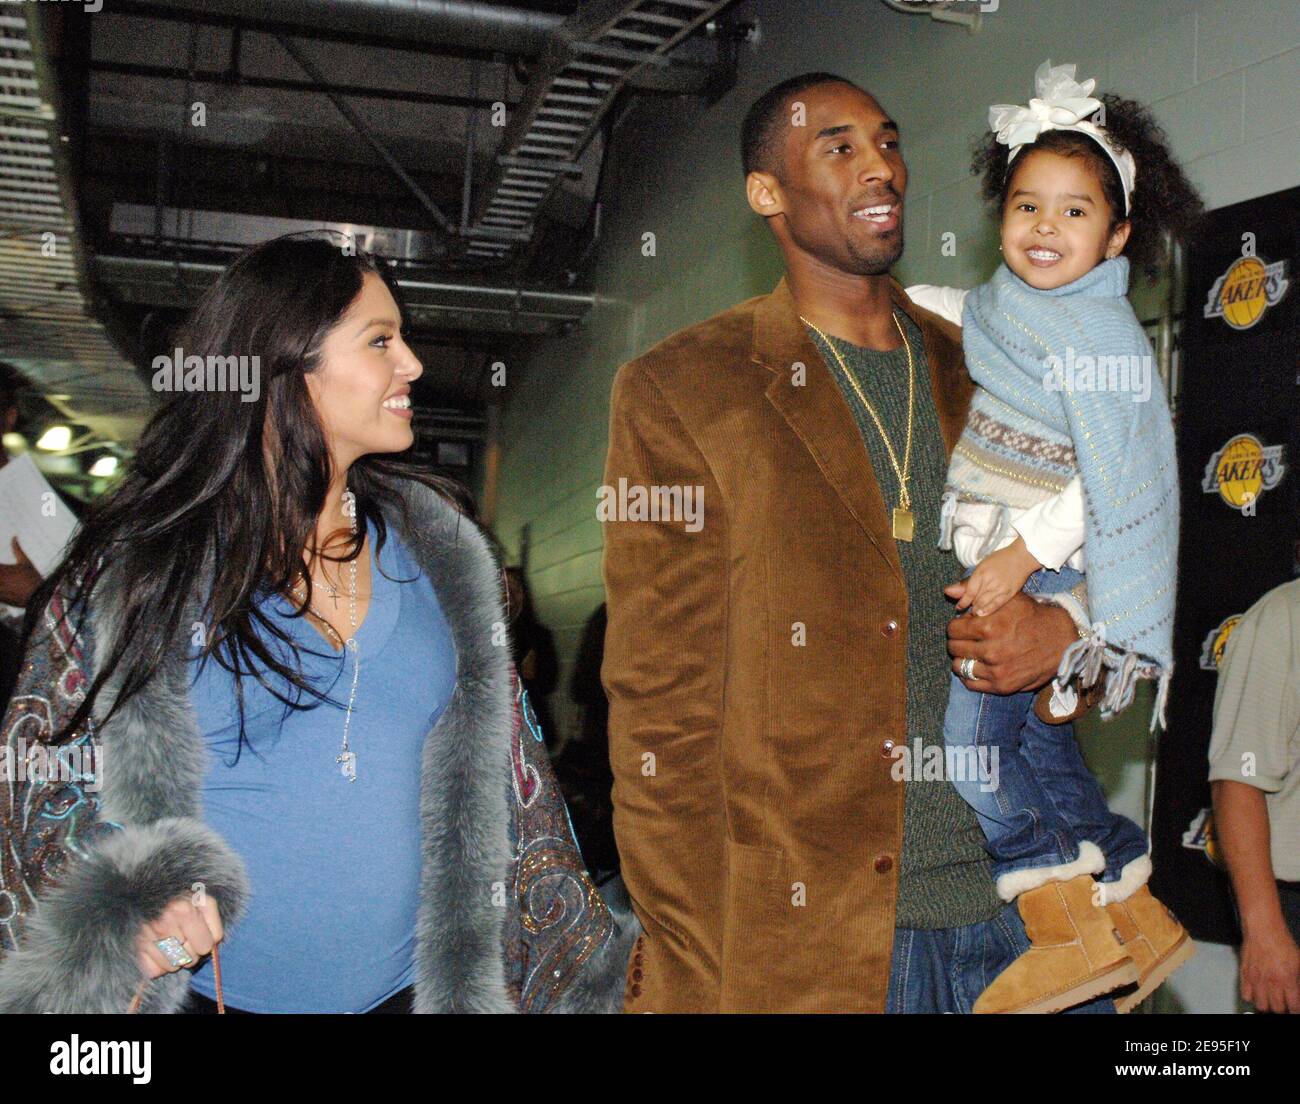 Los Angeles Lakers Kobe Bryant avec sa femme Vanessa Laine et sa fille  Natalia Diamante quittent le Staples Center après avoir marqué 81 points  historiques, le deuxième score le plus élevé de